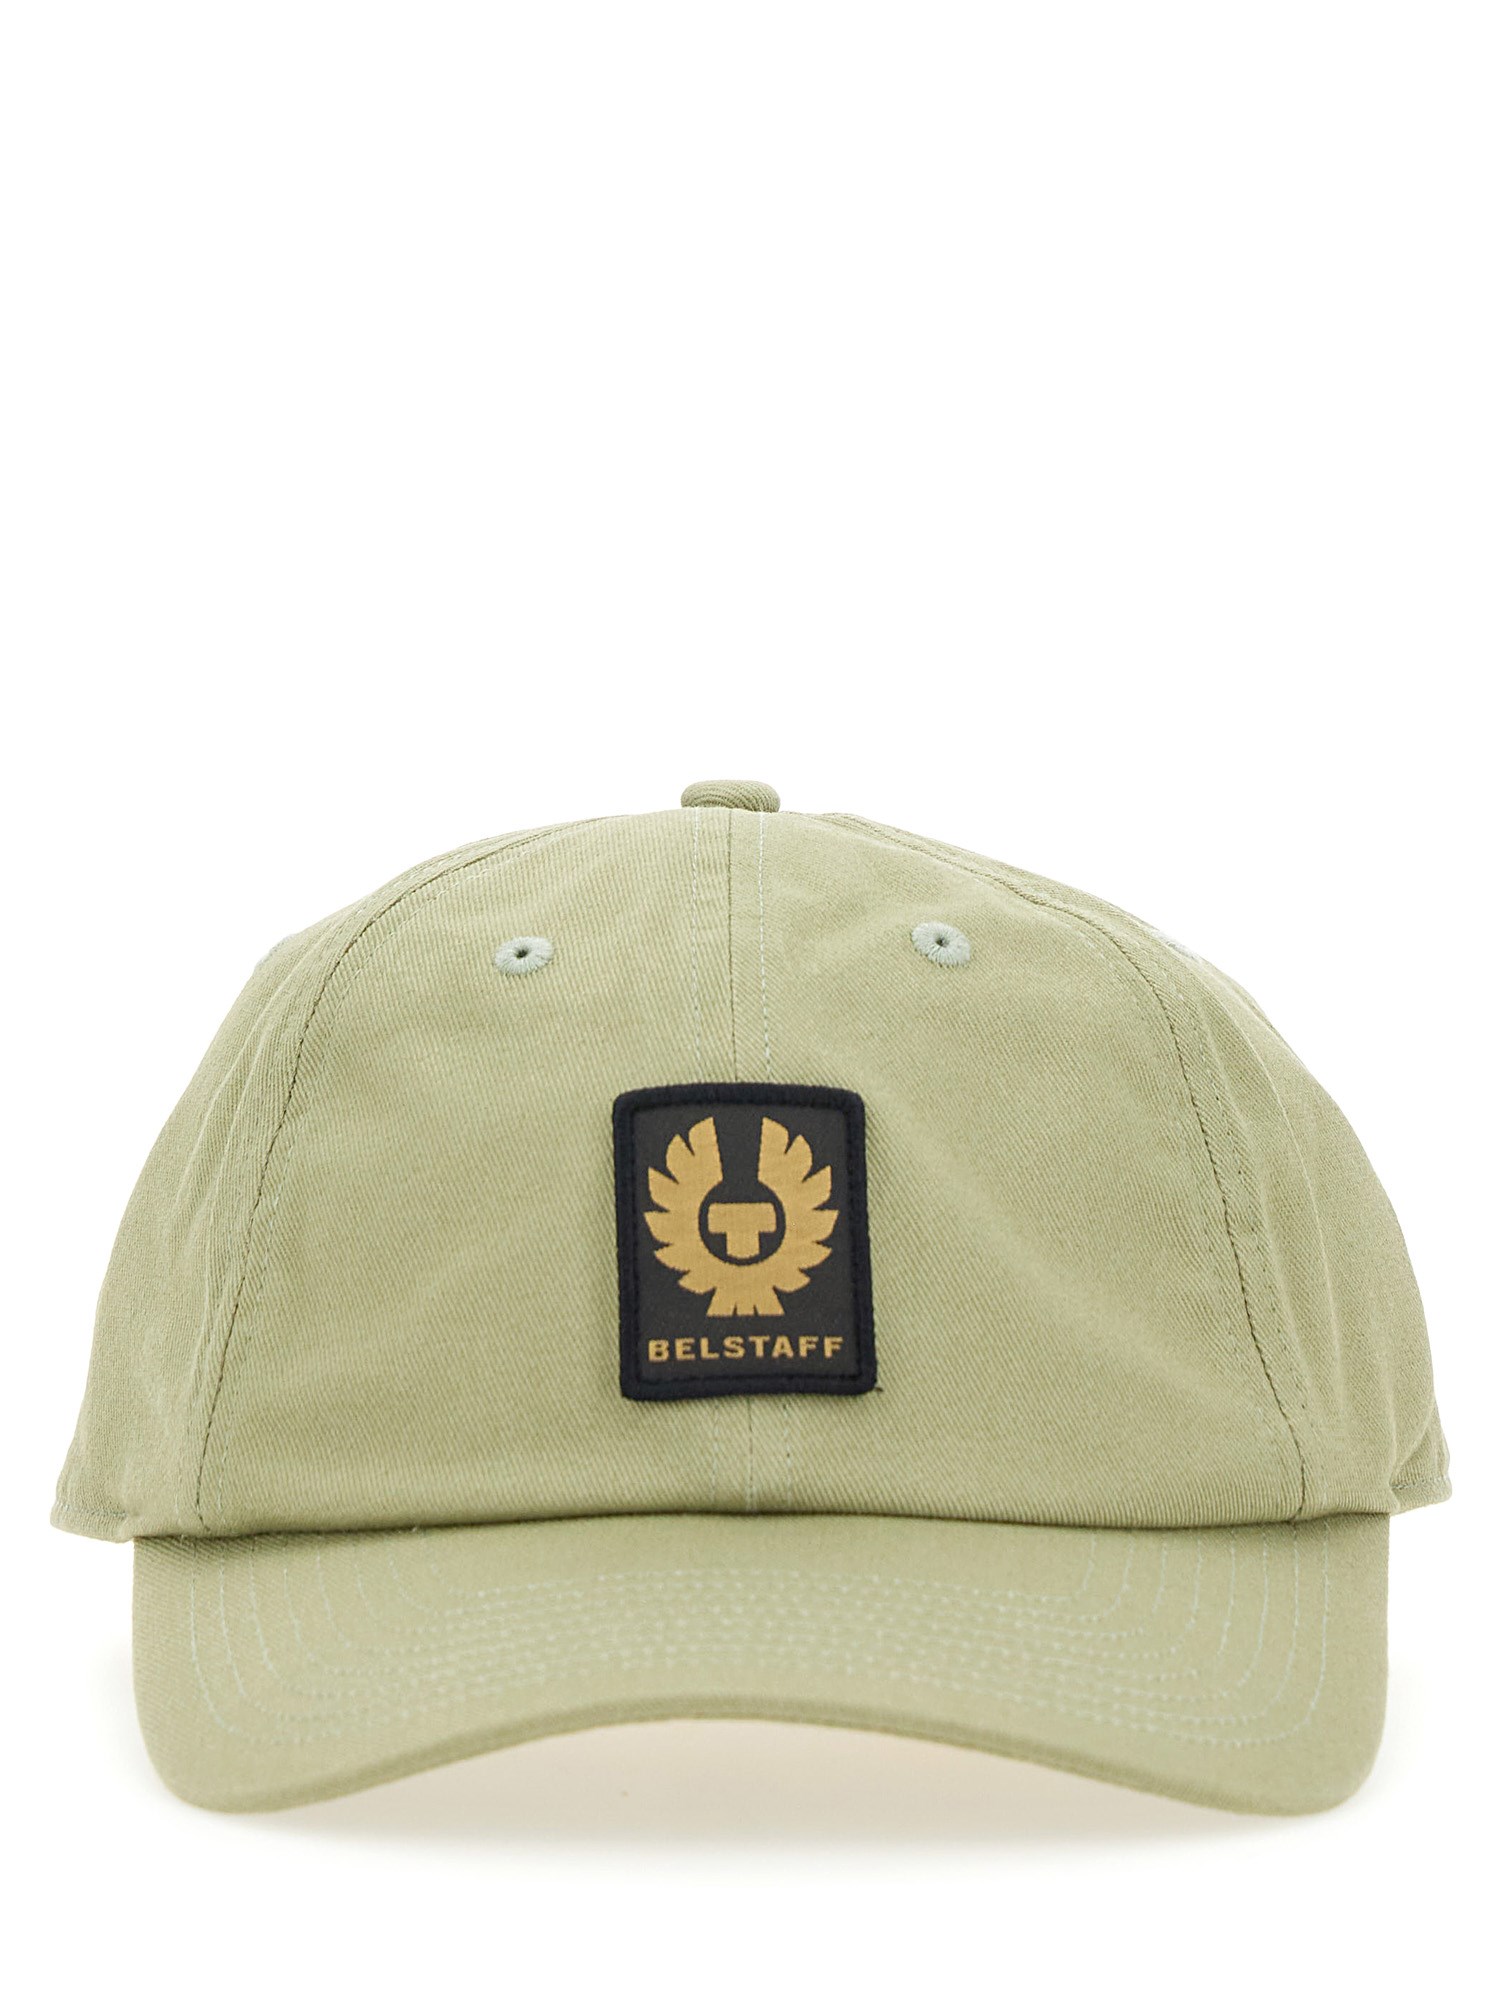 Belstaff belstaff baseball hat with logo